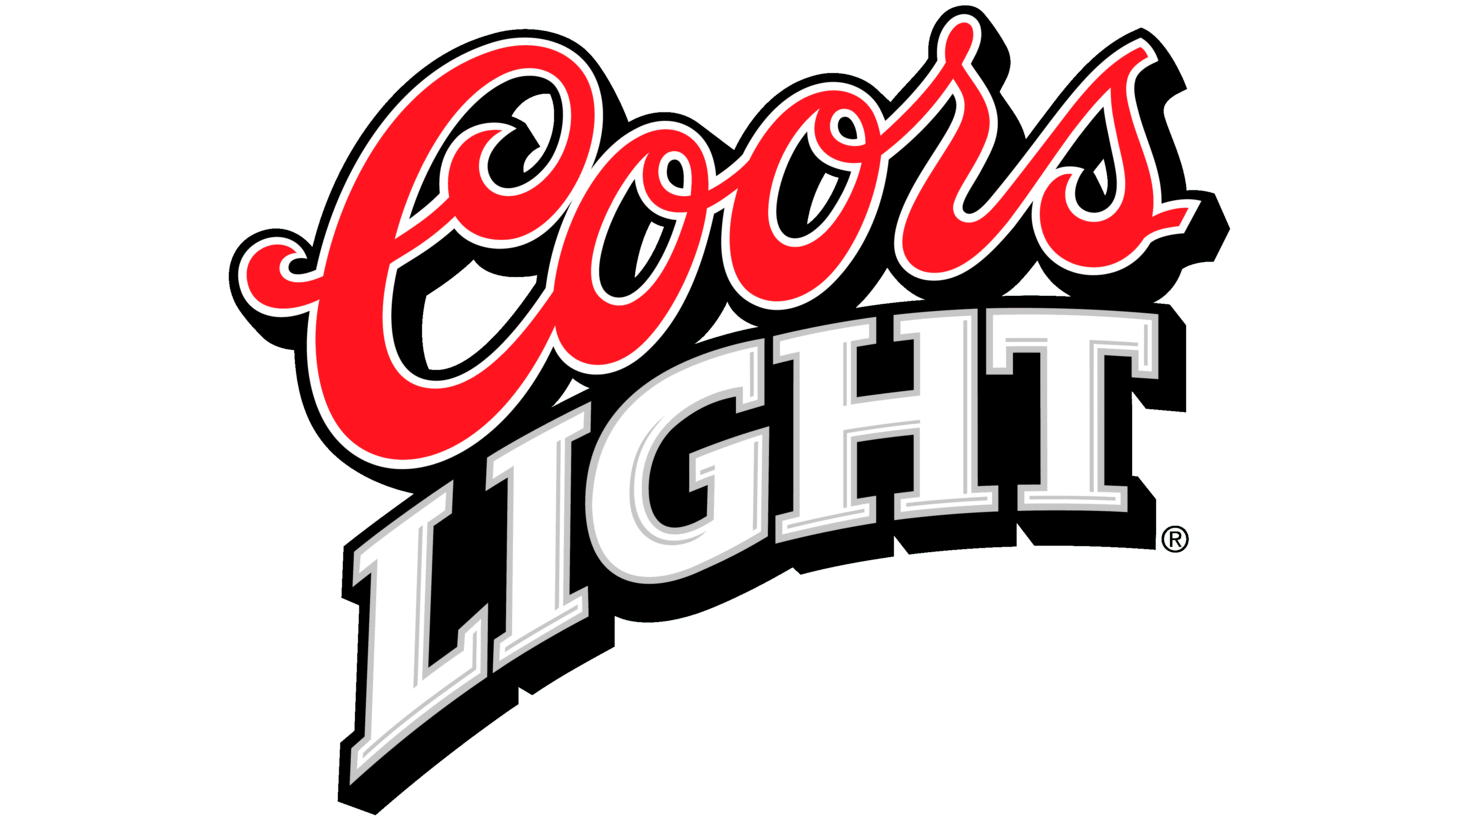 Coors light sign 1999 2005